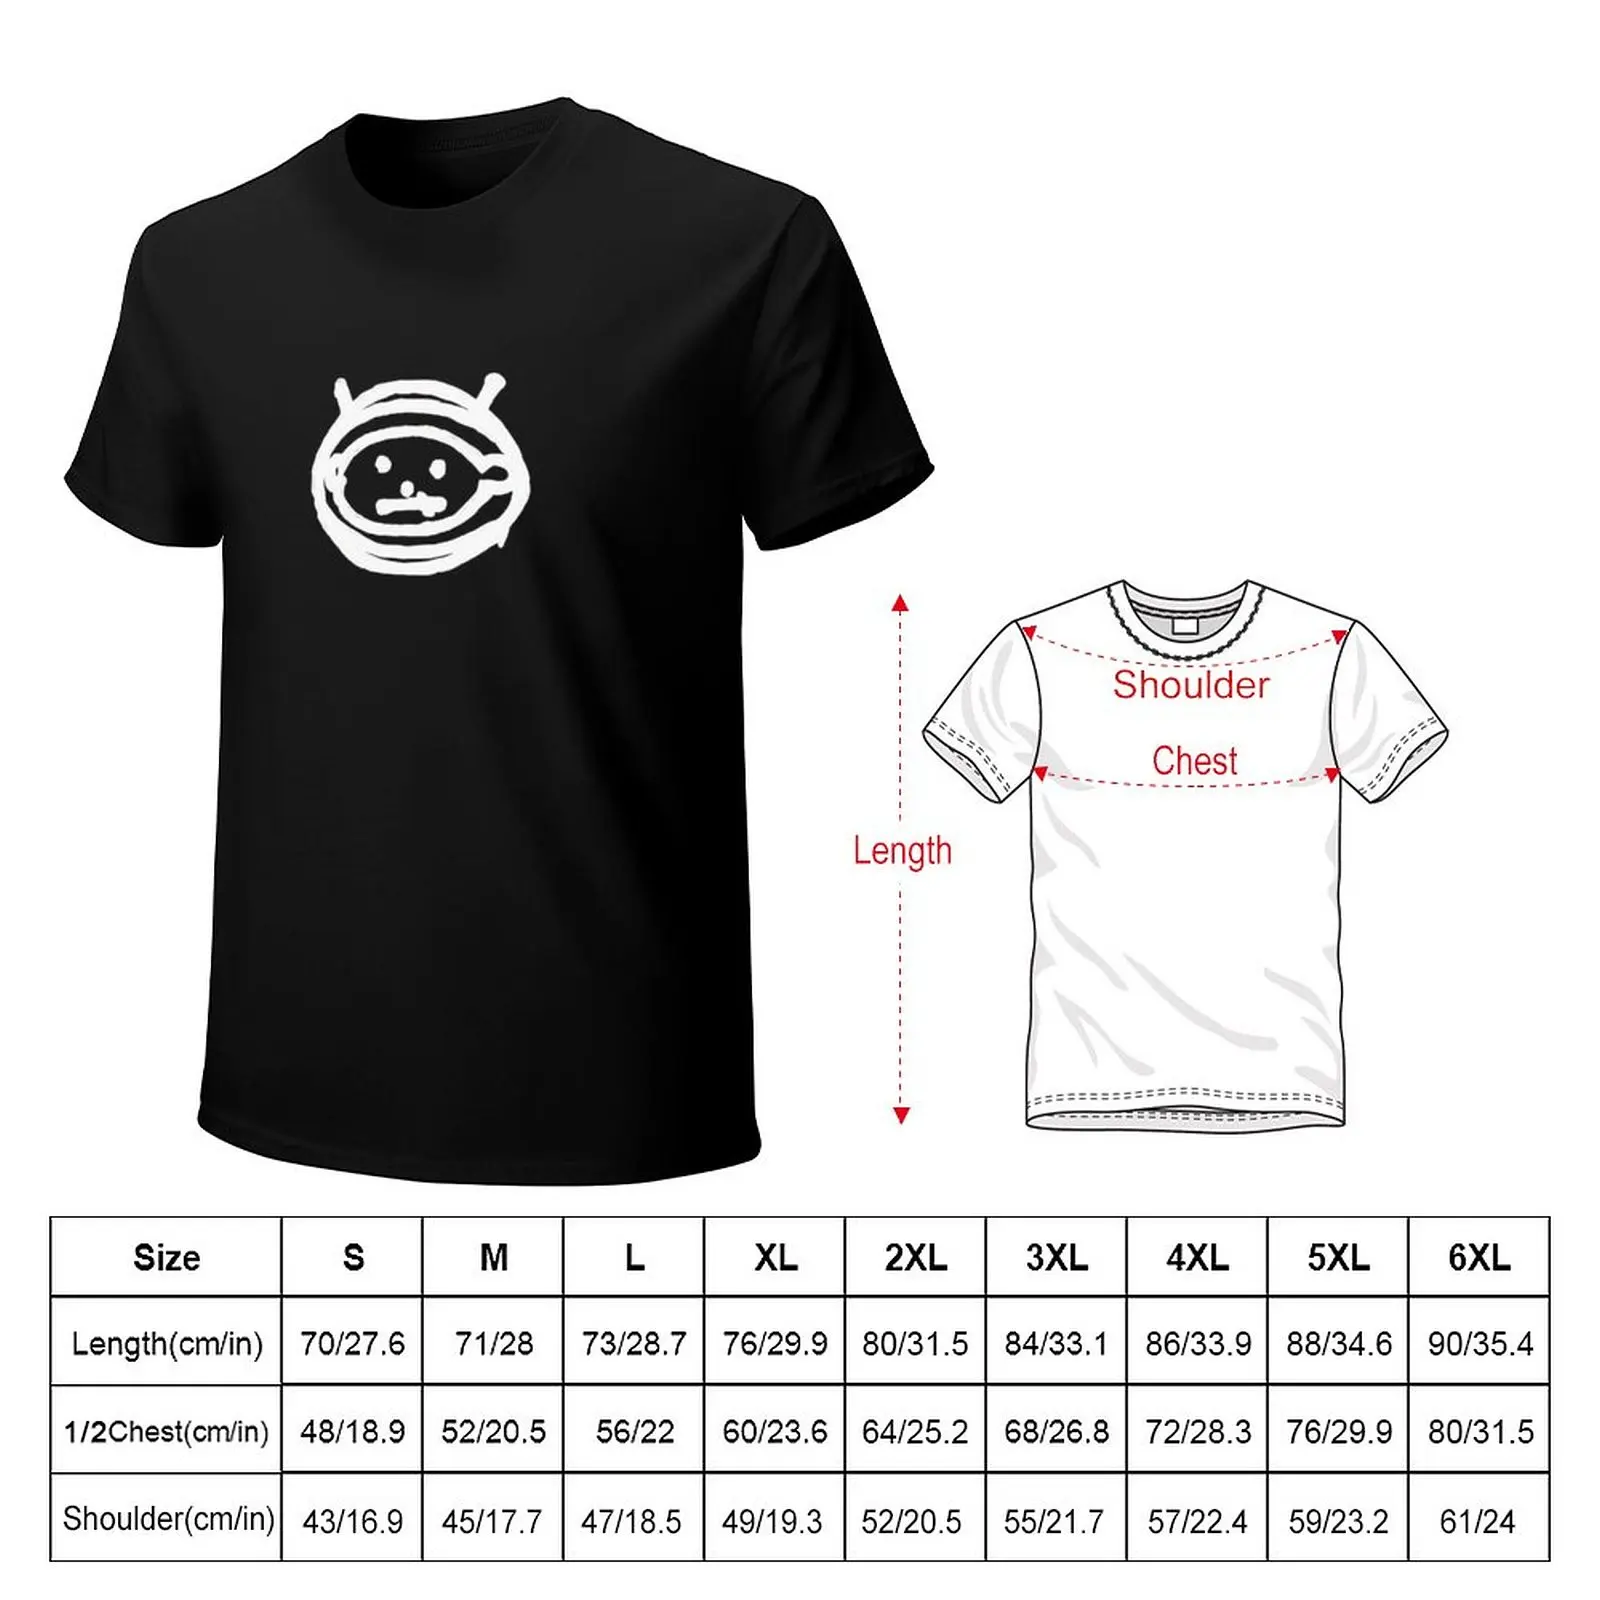 Футболка ZOO Products, футболки для тяжеловесов, топы больших размеров, футболки с кошками, футболки для мужчин Изображение 1